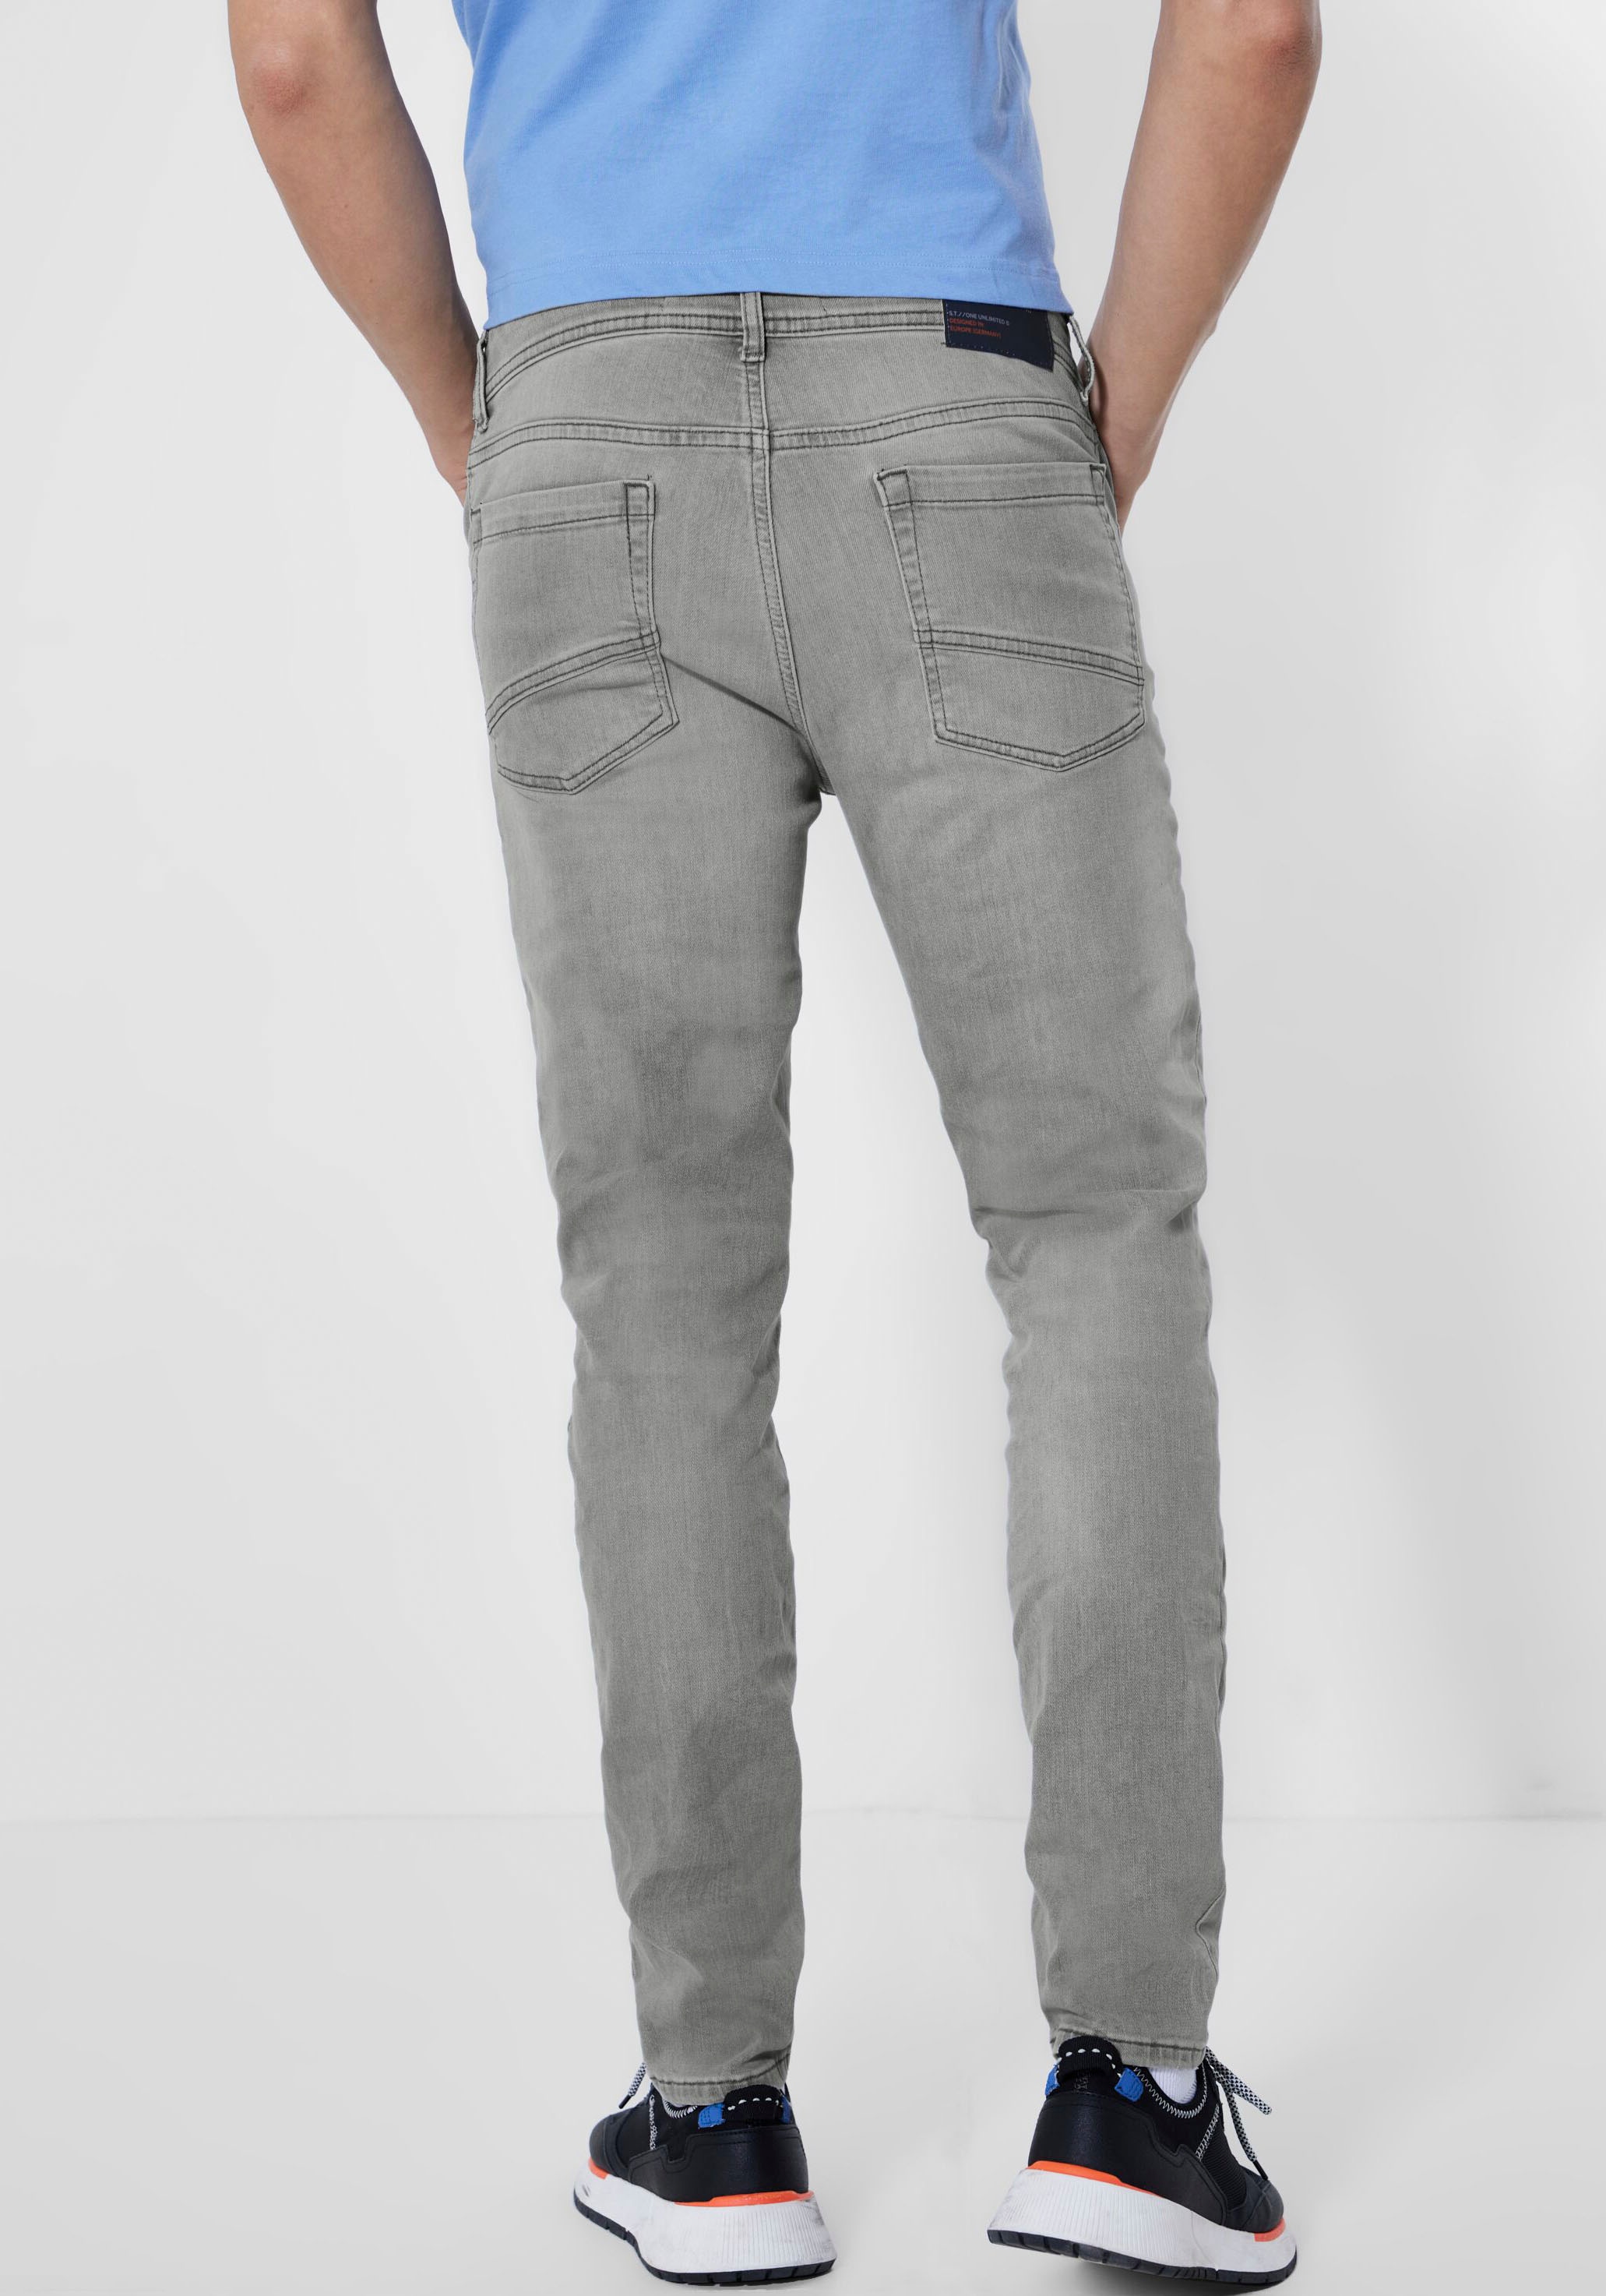 | STREET MEN BAUR Waschung grauer ONE in Slim-fit-Jeans,